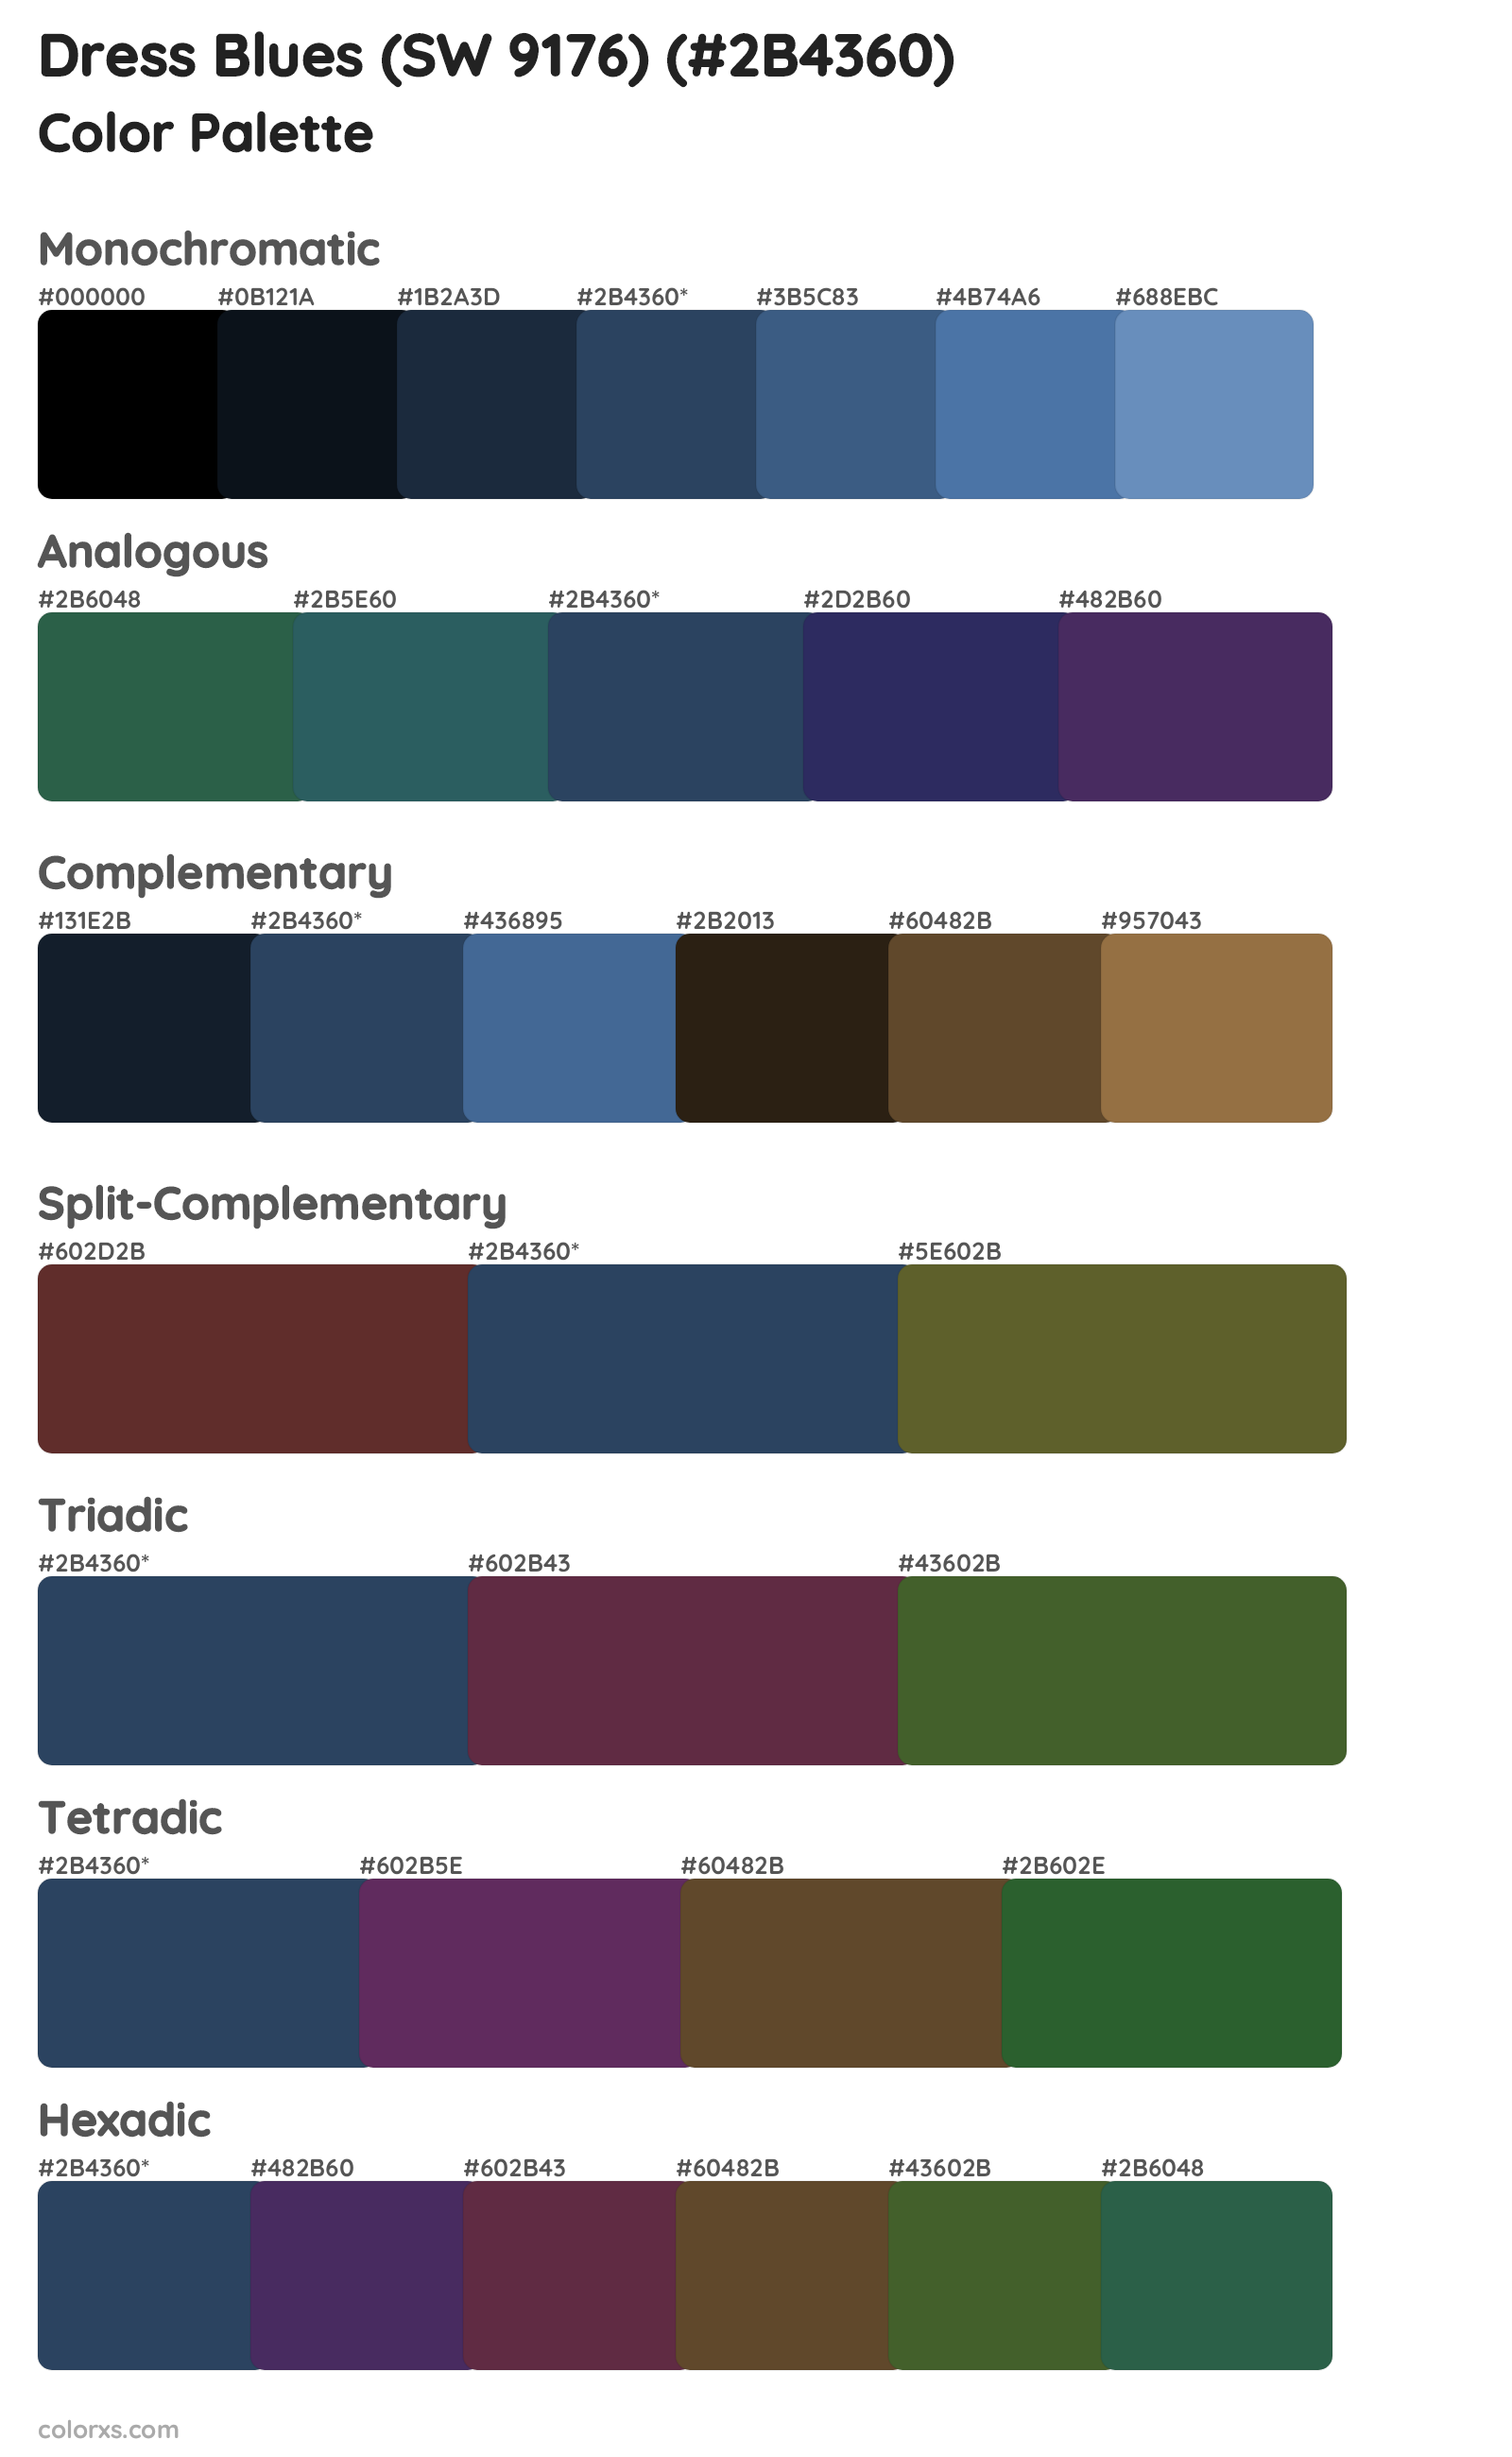 Dress Blues (SW 9176) Color Scheme Palettes